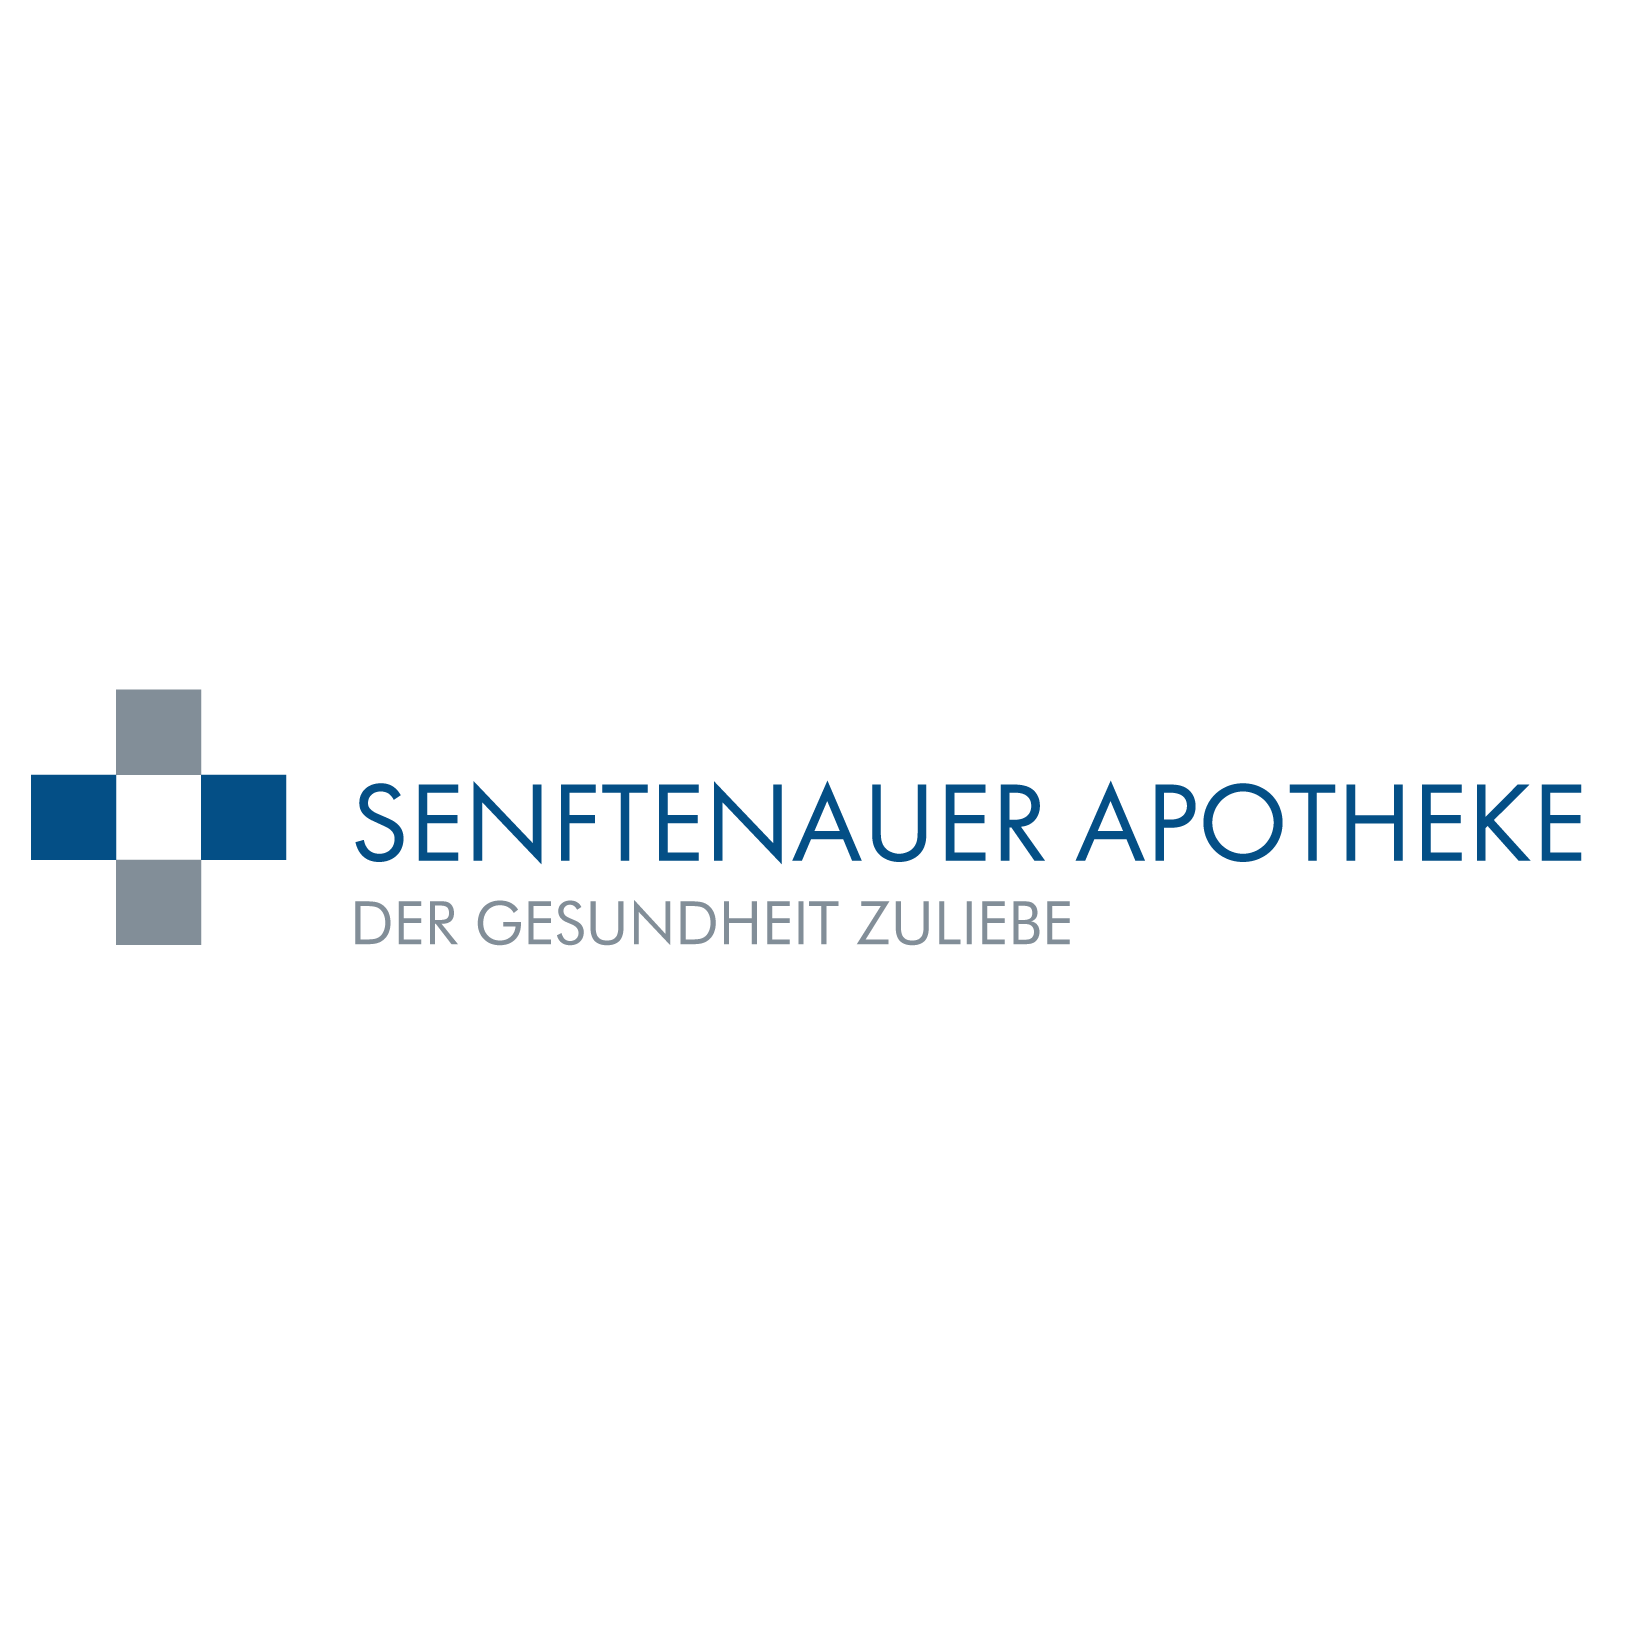 Senftenauer Apotheke in München